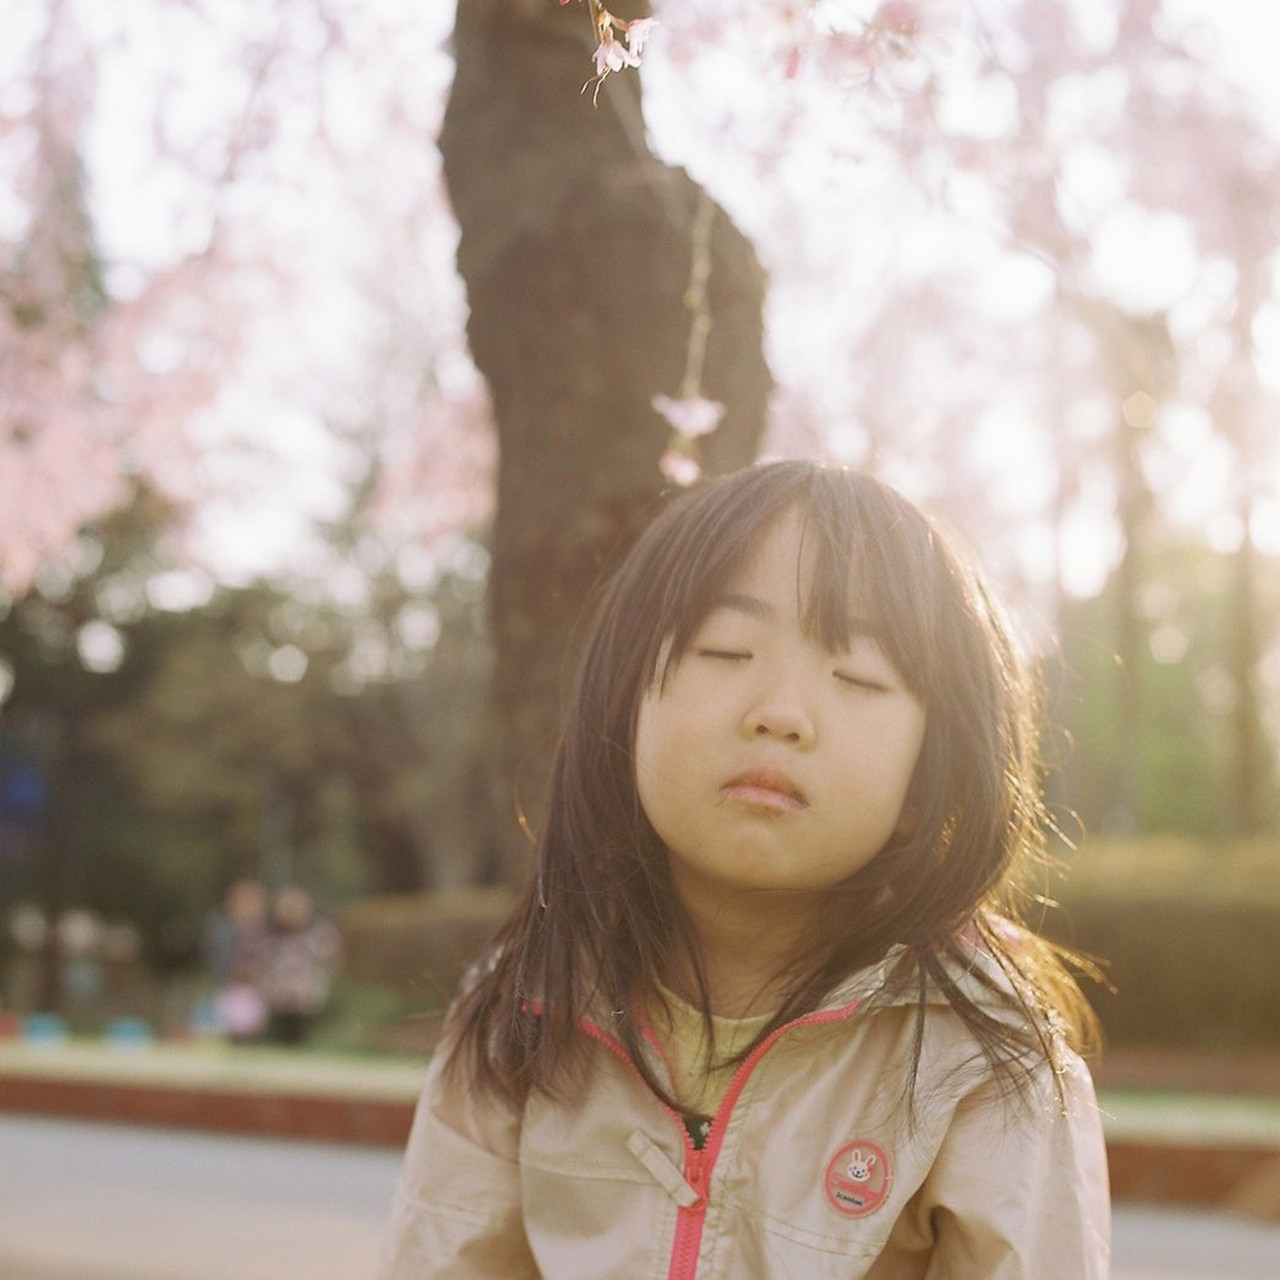 日系家庭摄影 日本摄影师与女儿的视角